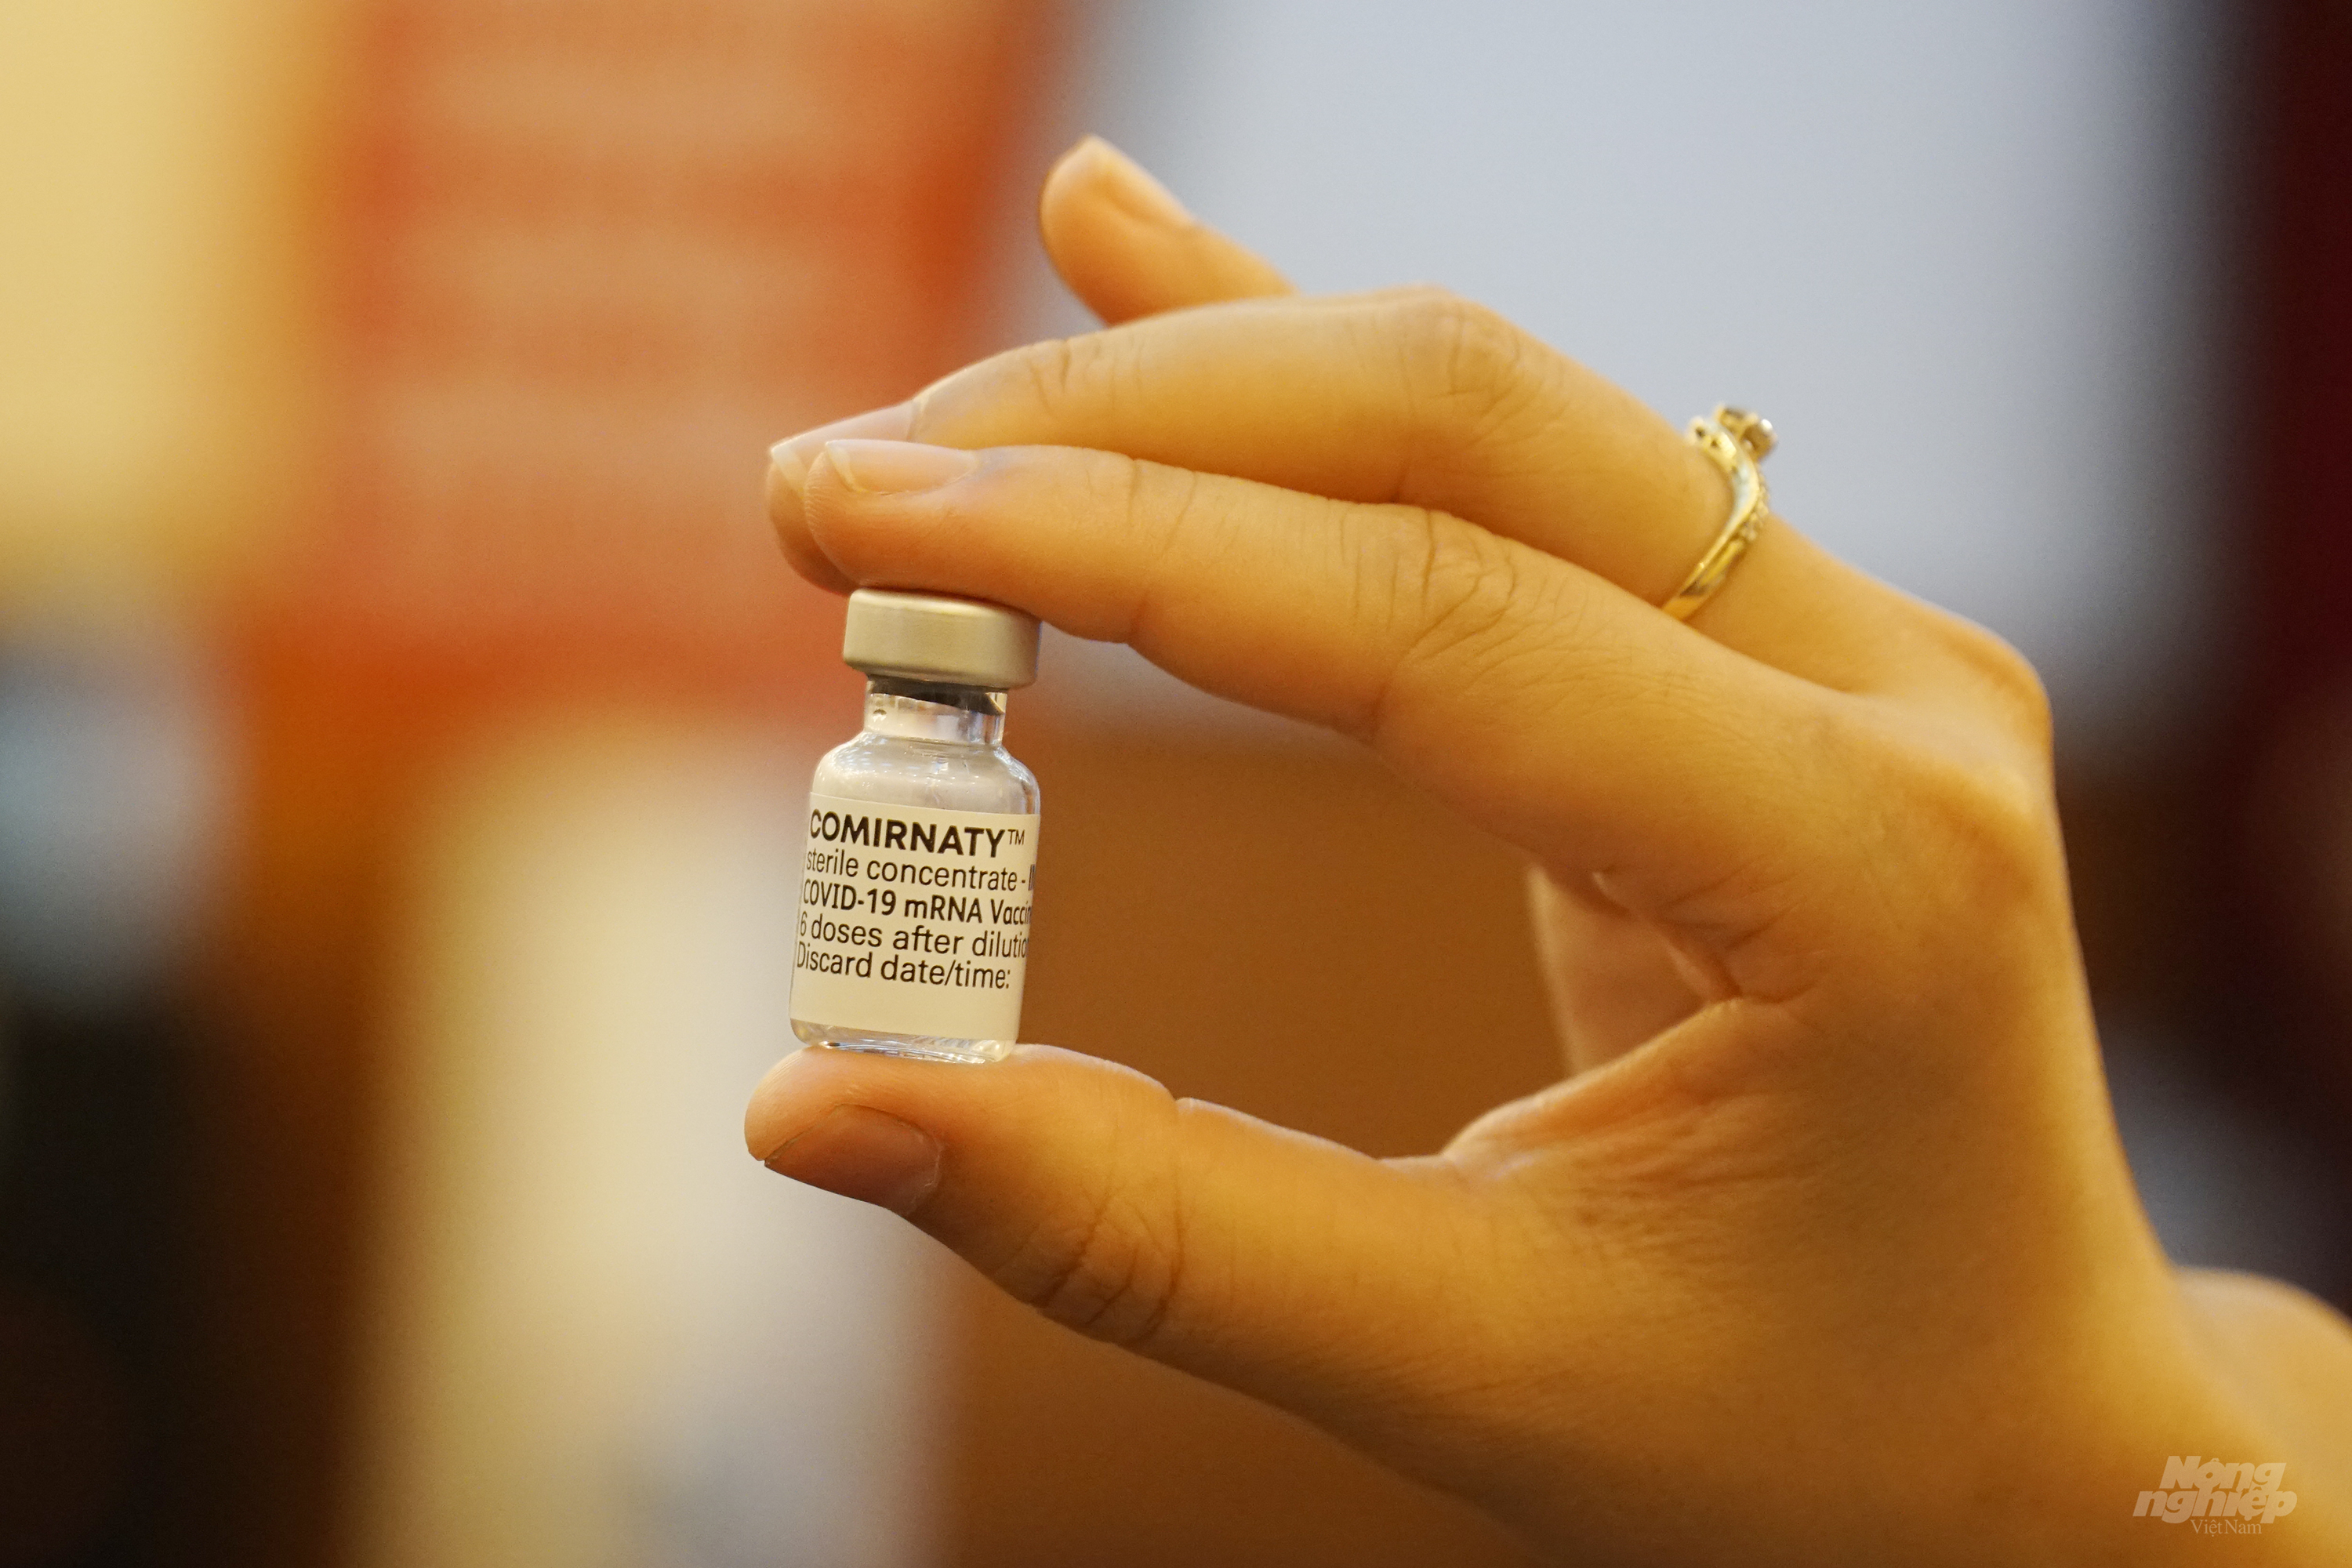 Vacxin phòng Covid-19 của Pfizer đang được sử dụng để tiêm cho trẻ từ 12-17 tuổi tại các tỉnh thành phố trên cả nước. Ảnh: Nguyễn Thủy.